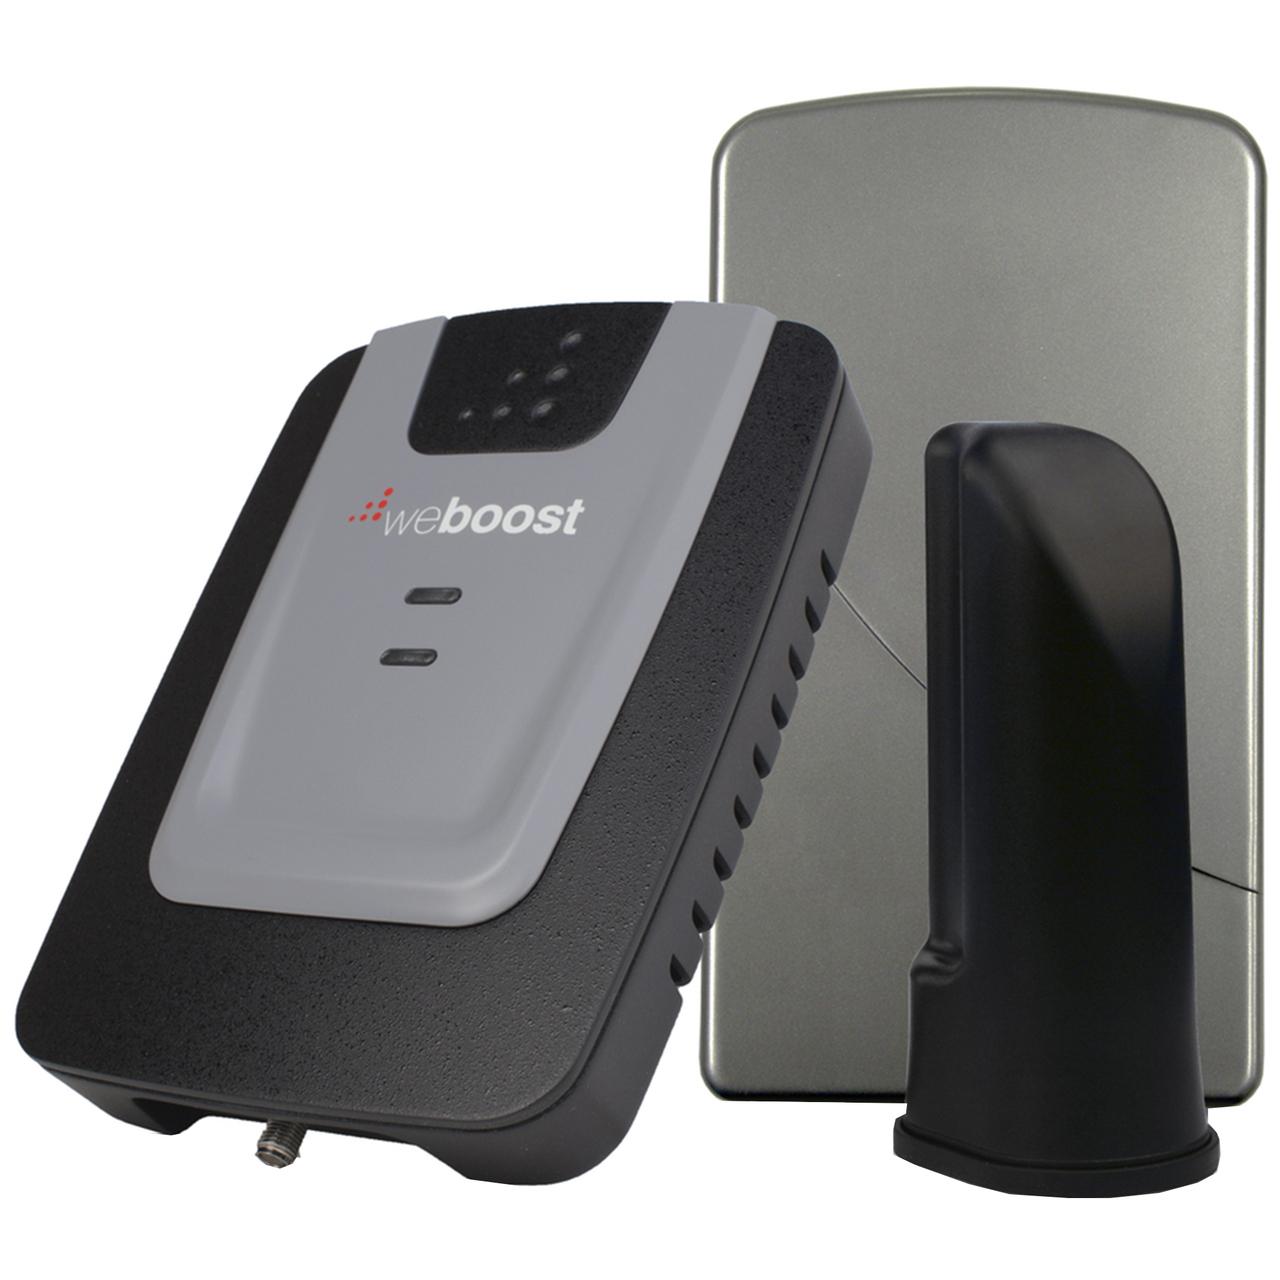 Amplificateur pour signal cellulaire de maison WeBoost 473105-Home 3G - Télécommunications